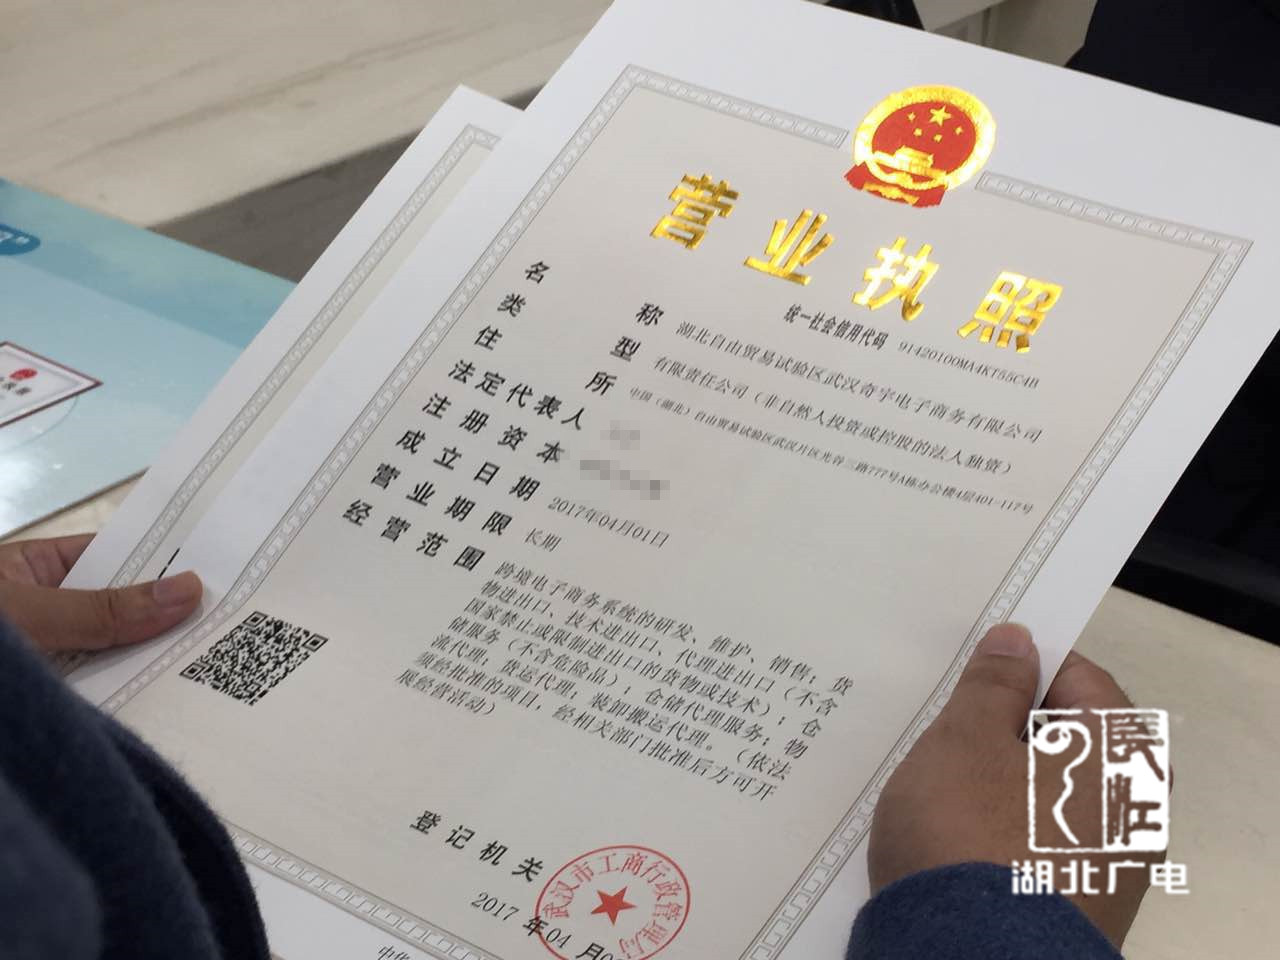 快讯 | 湖北自贸区发放第一张企业营业执照